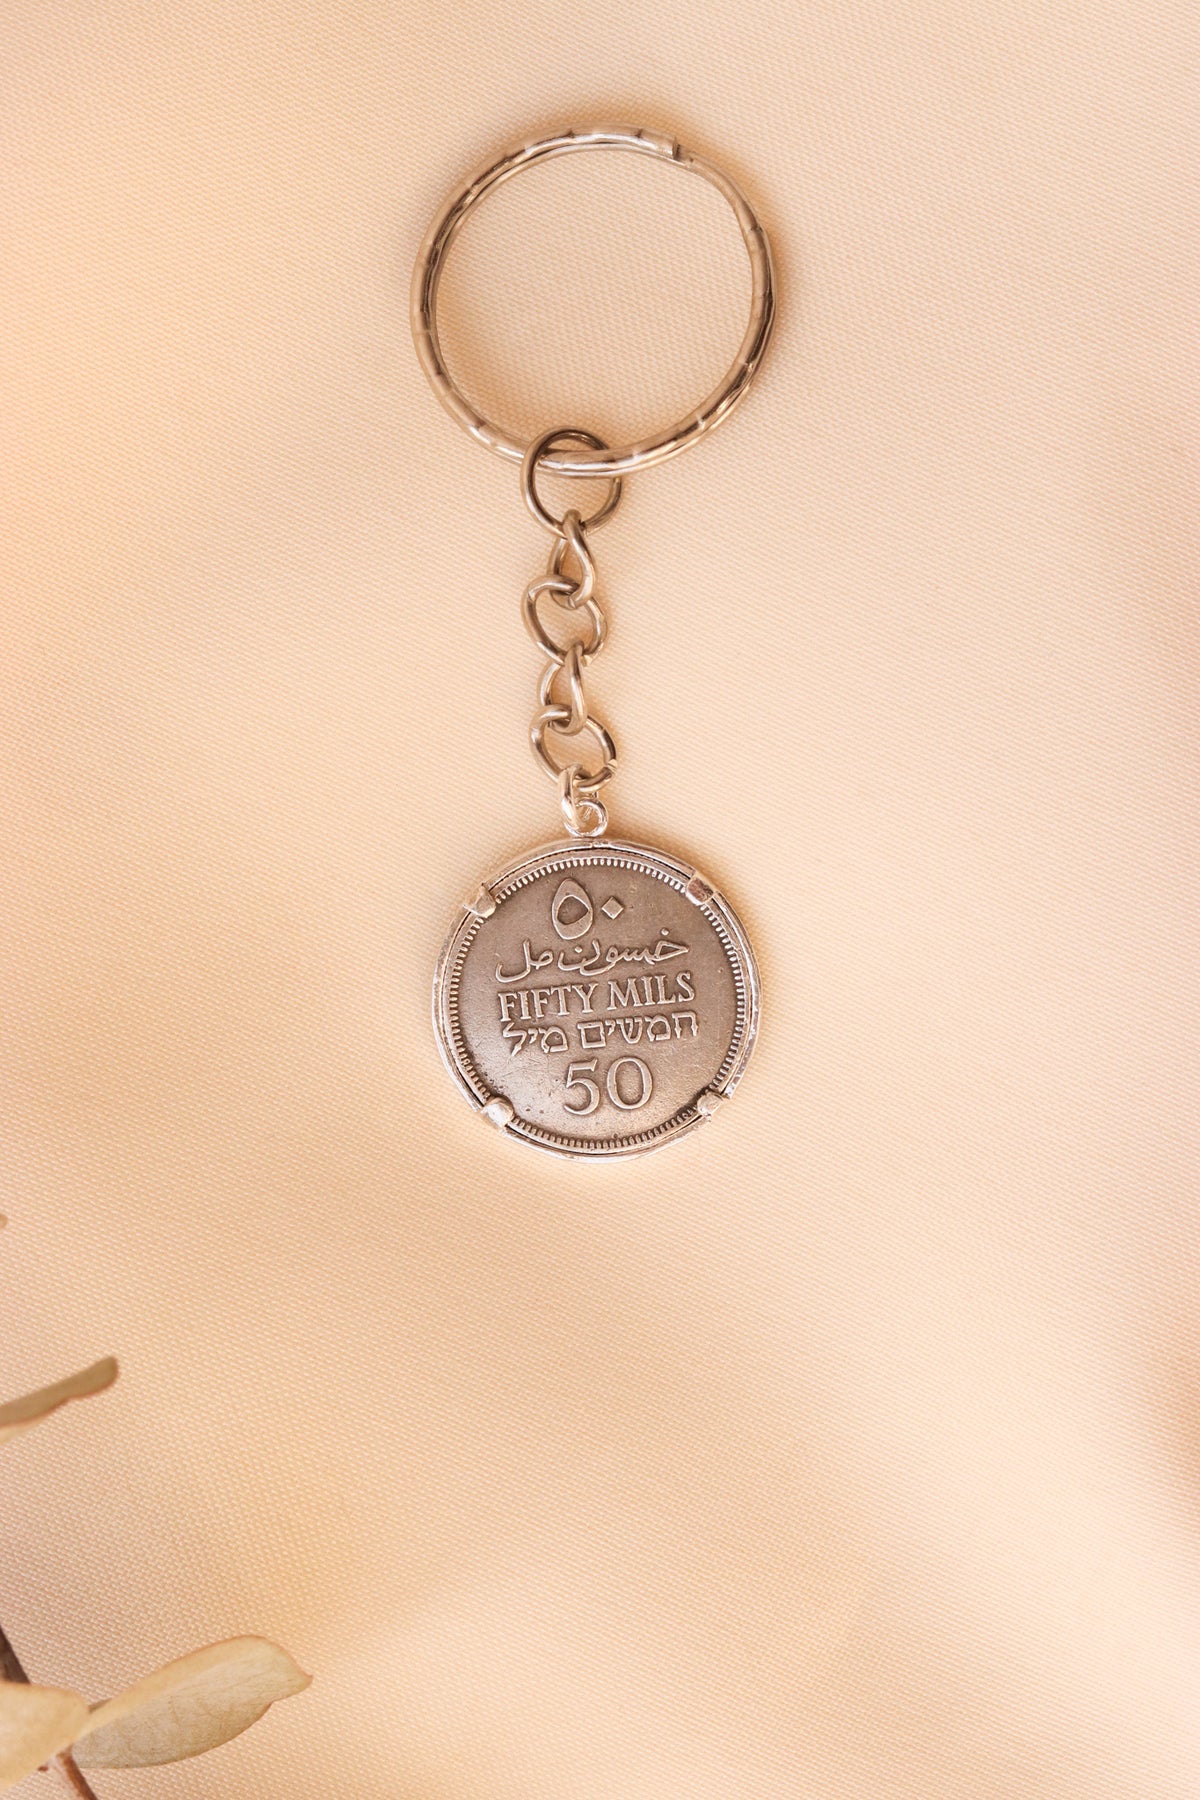 ميدالية مفاتيح العملة الفلسطينية ٥٠مل مع ايطار بسيط